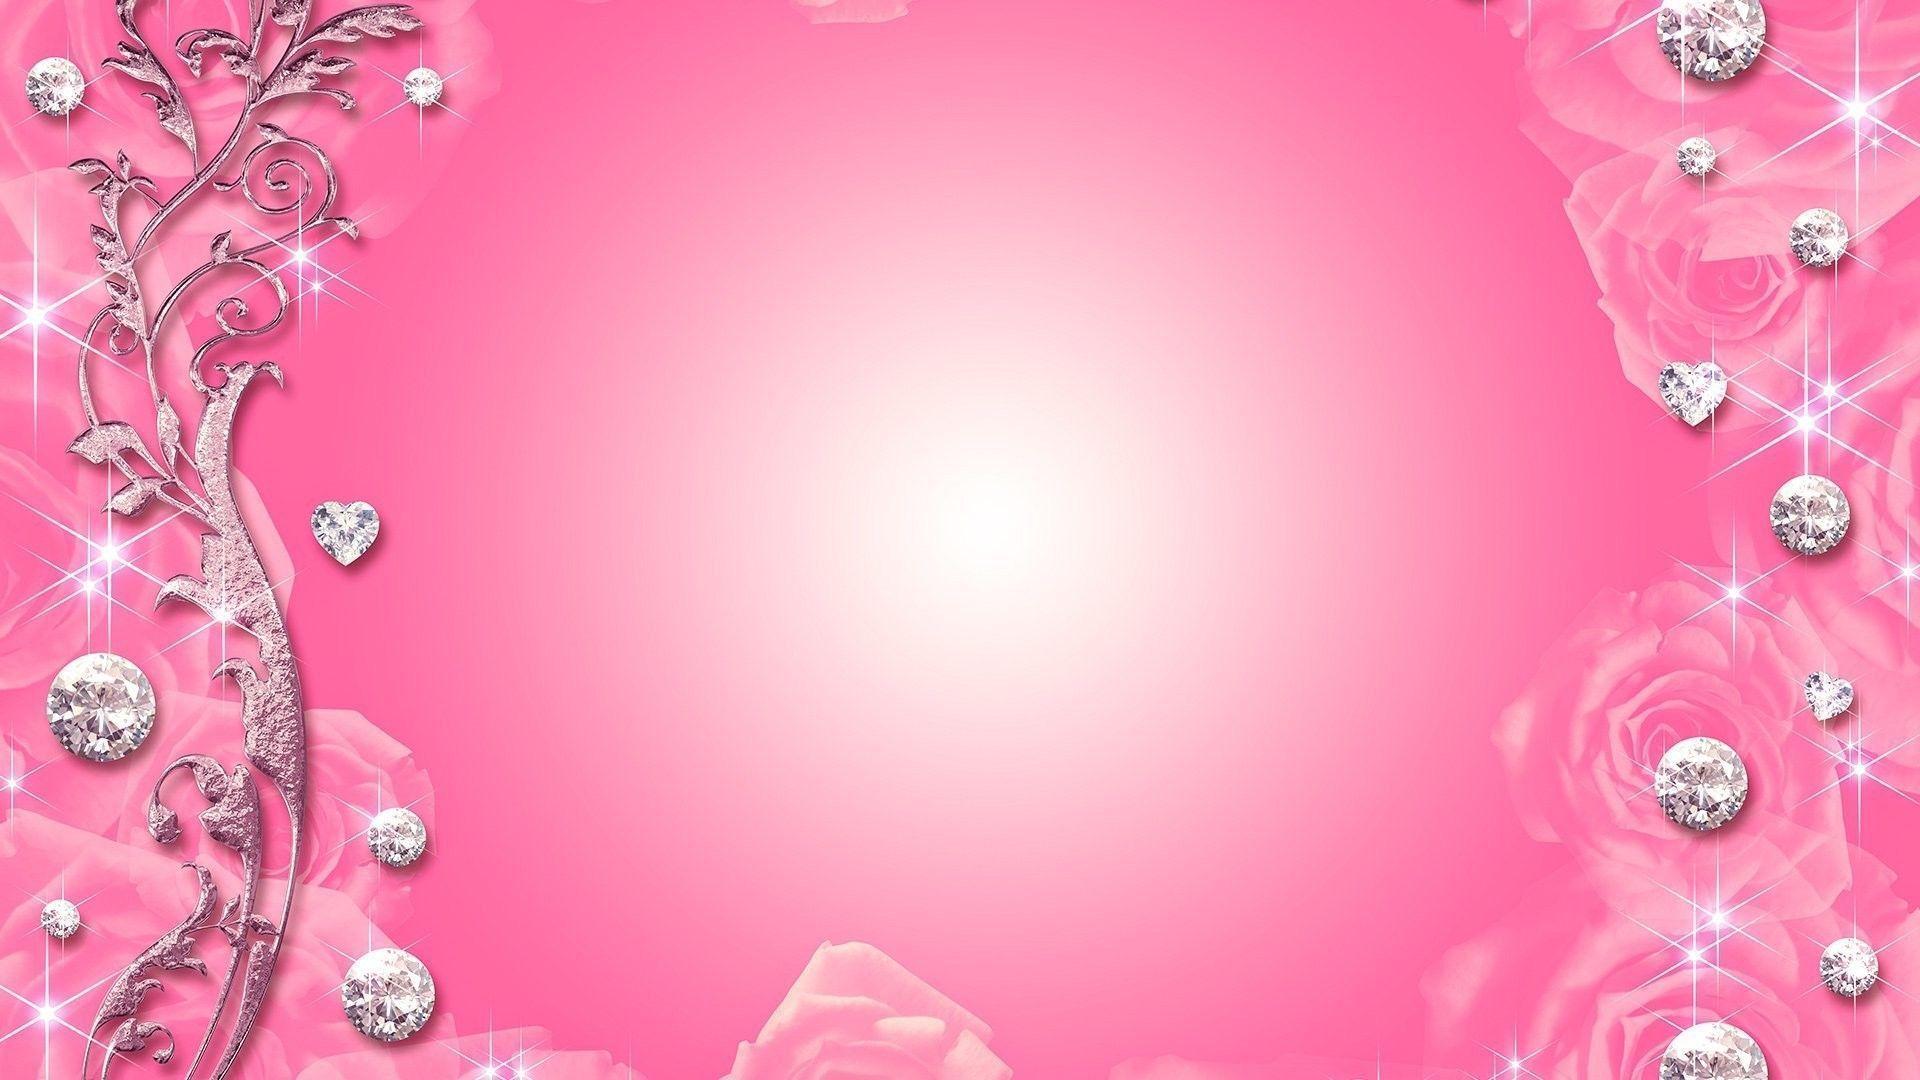 Image For > Light Pink Backgrounds For Websites